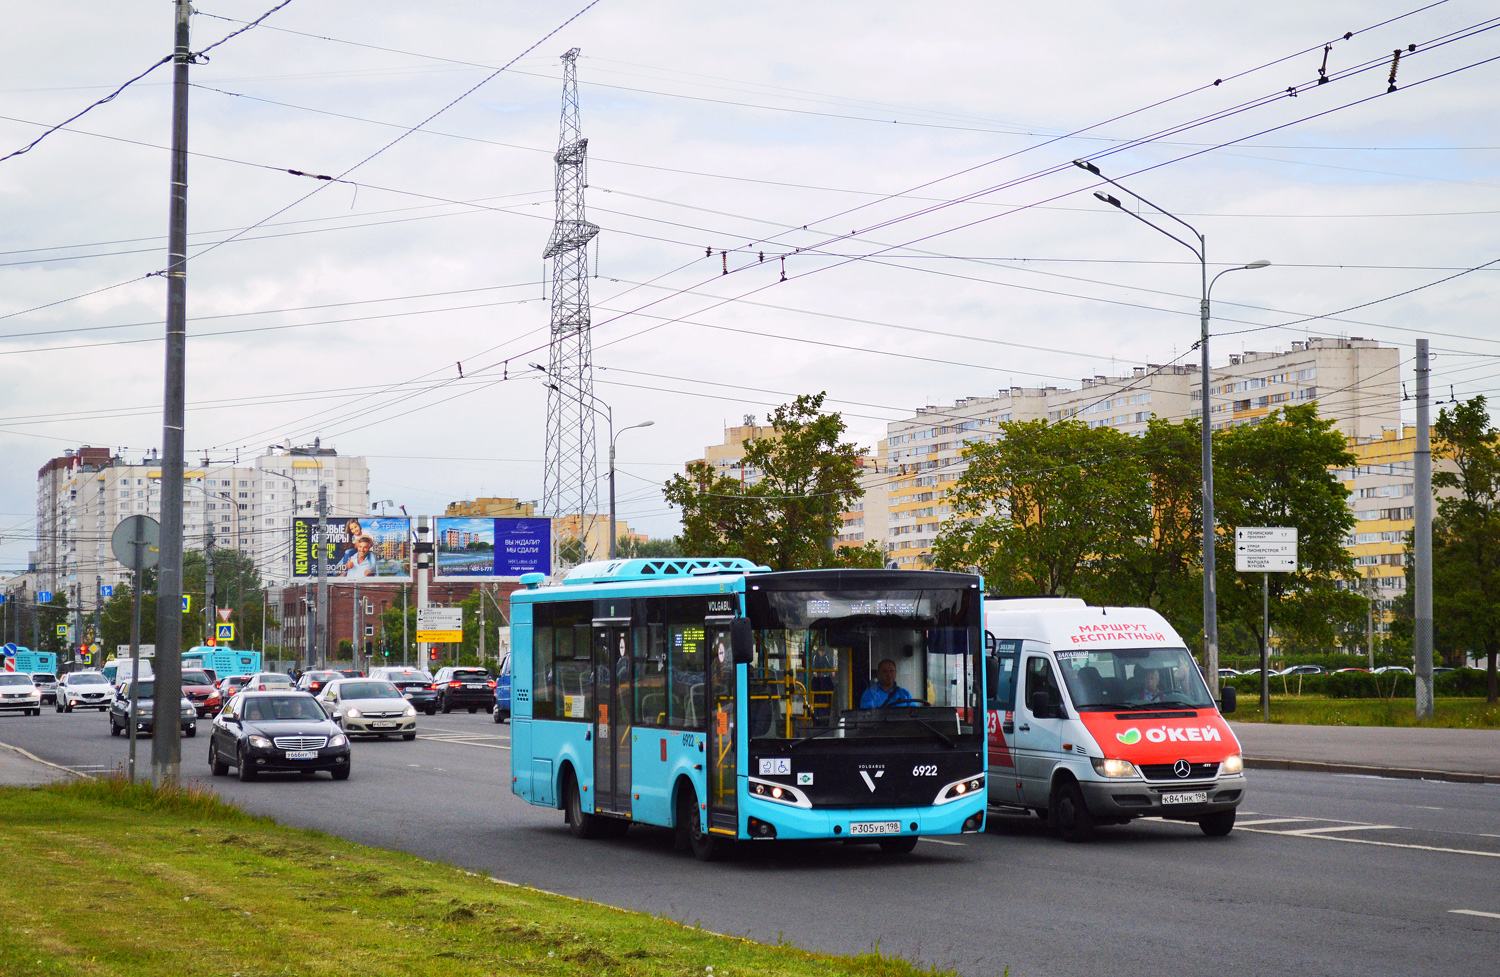 Sankt Peterburgas, Volgabus-4298.G4 (LNG) Nr. 6922